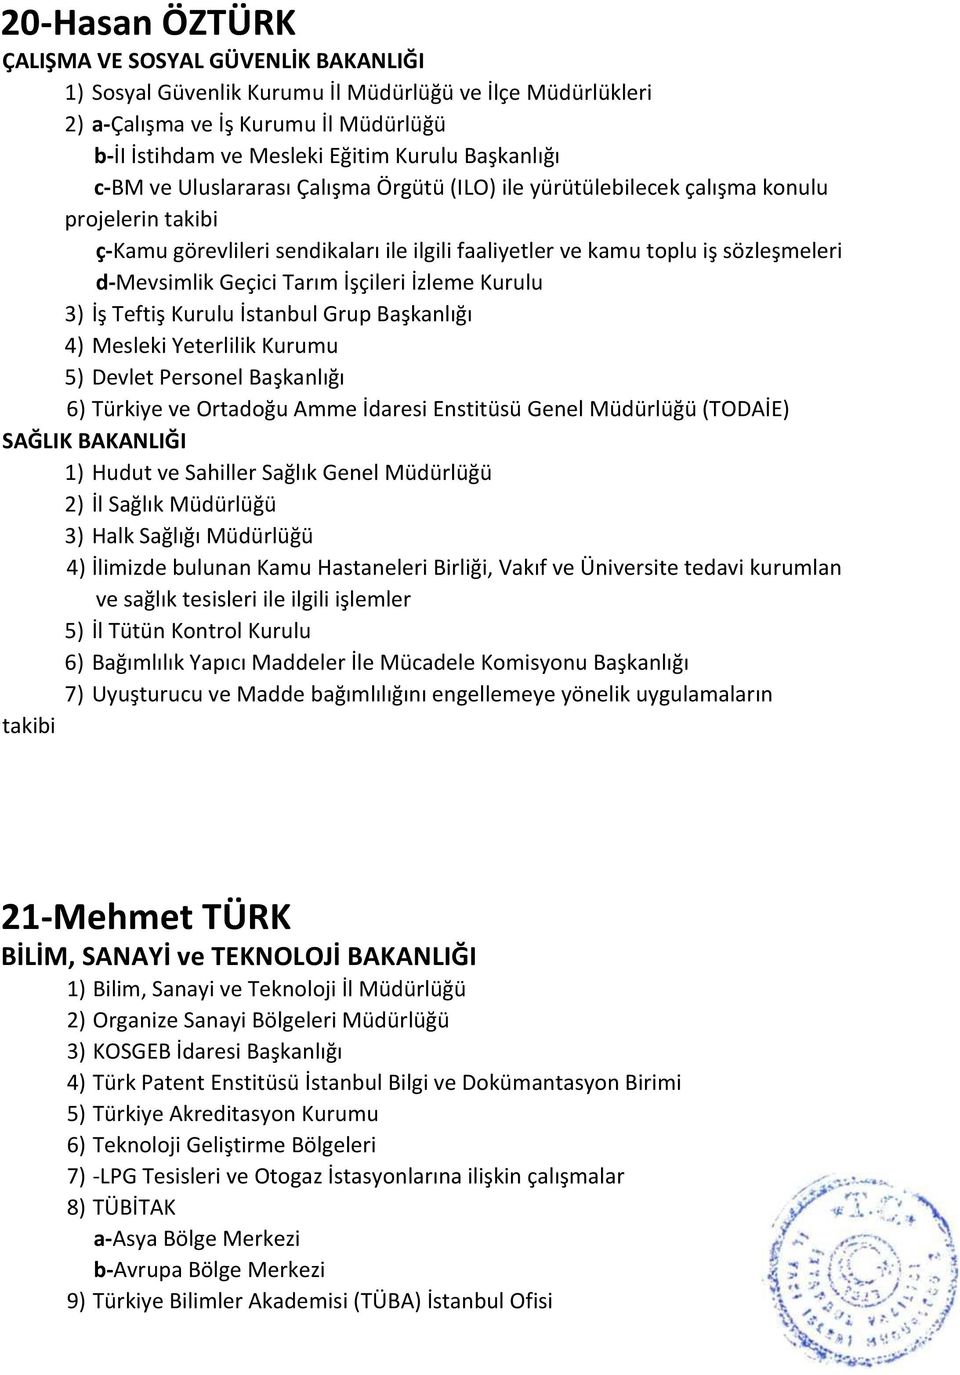 d-mevsimlik Geçici Tarım İşçileri İzleme Kurulu 3) İş Teftiş Kurulu İstanbul Grup Başkanlığı 4) Mesleki Yeterlilik Kurumu 5) Devlet Personel Başkanlığı 6) Türkiye ve Ortadoğu Amme İdaresi Enstitüsü